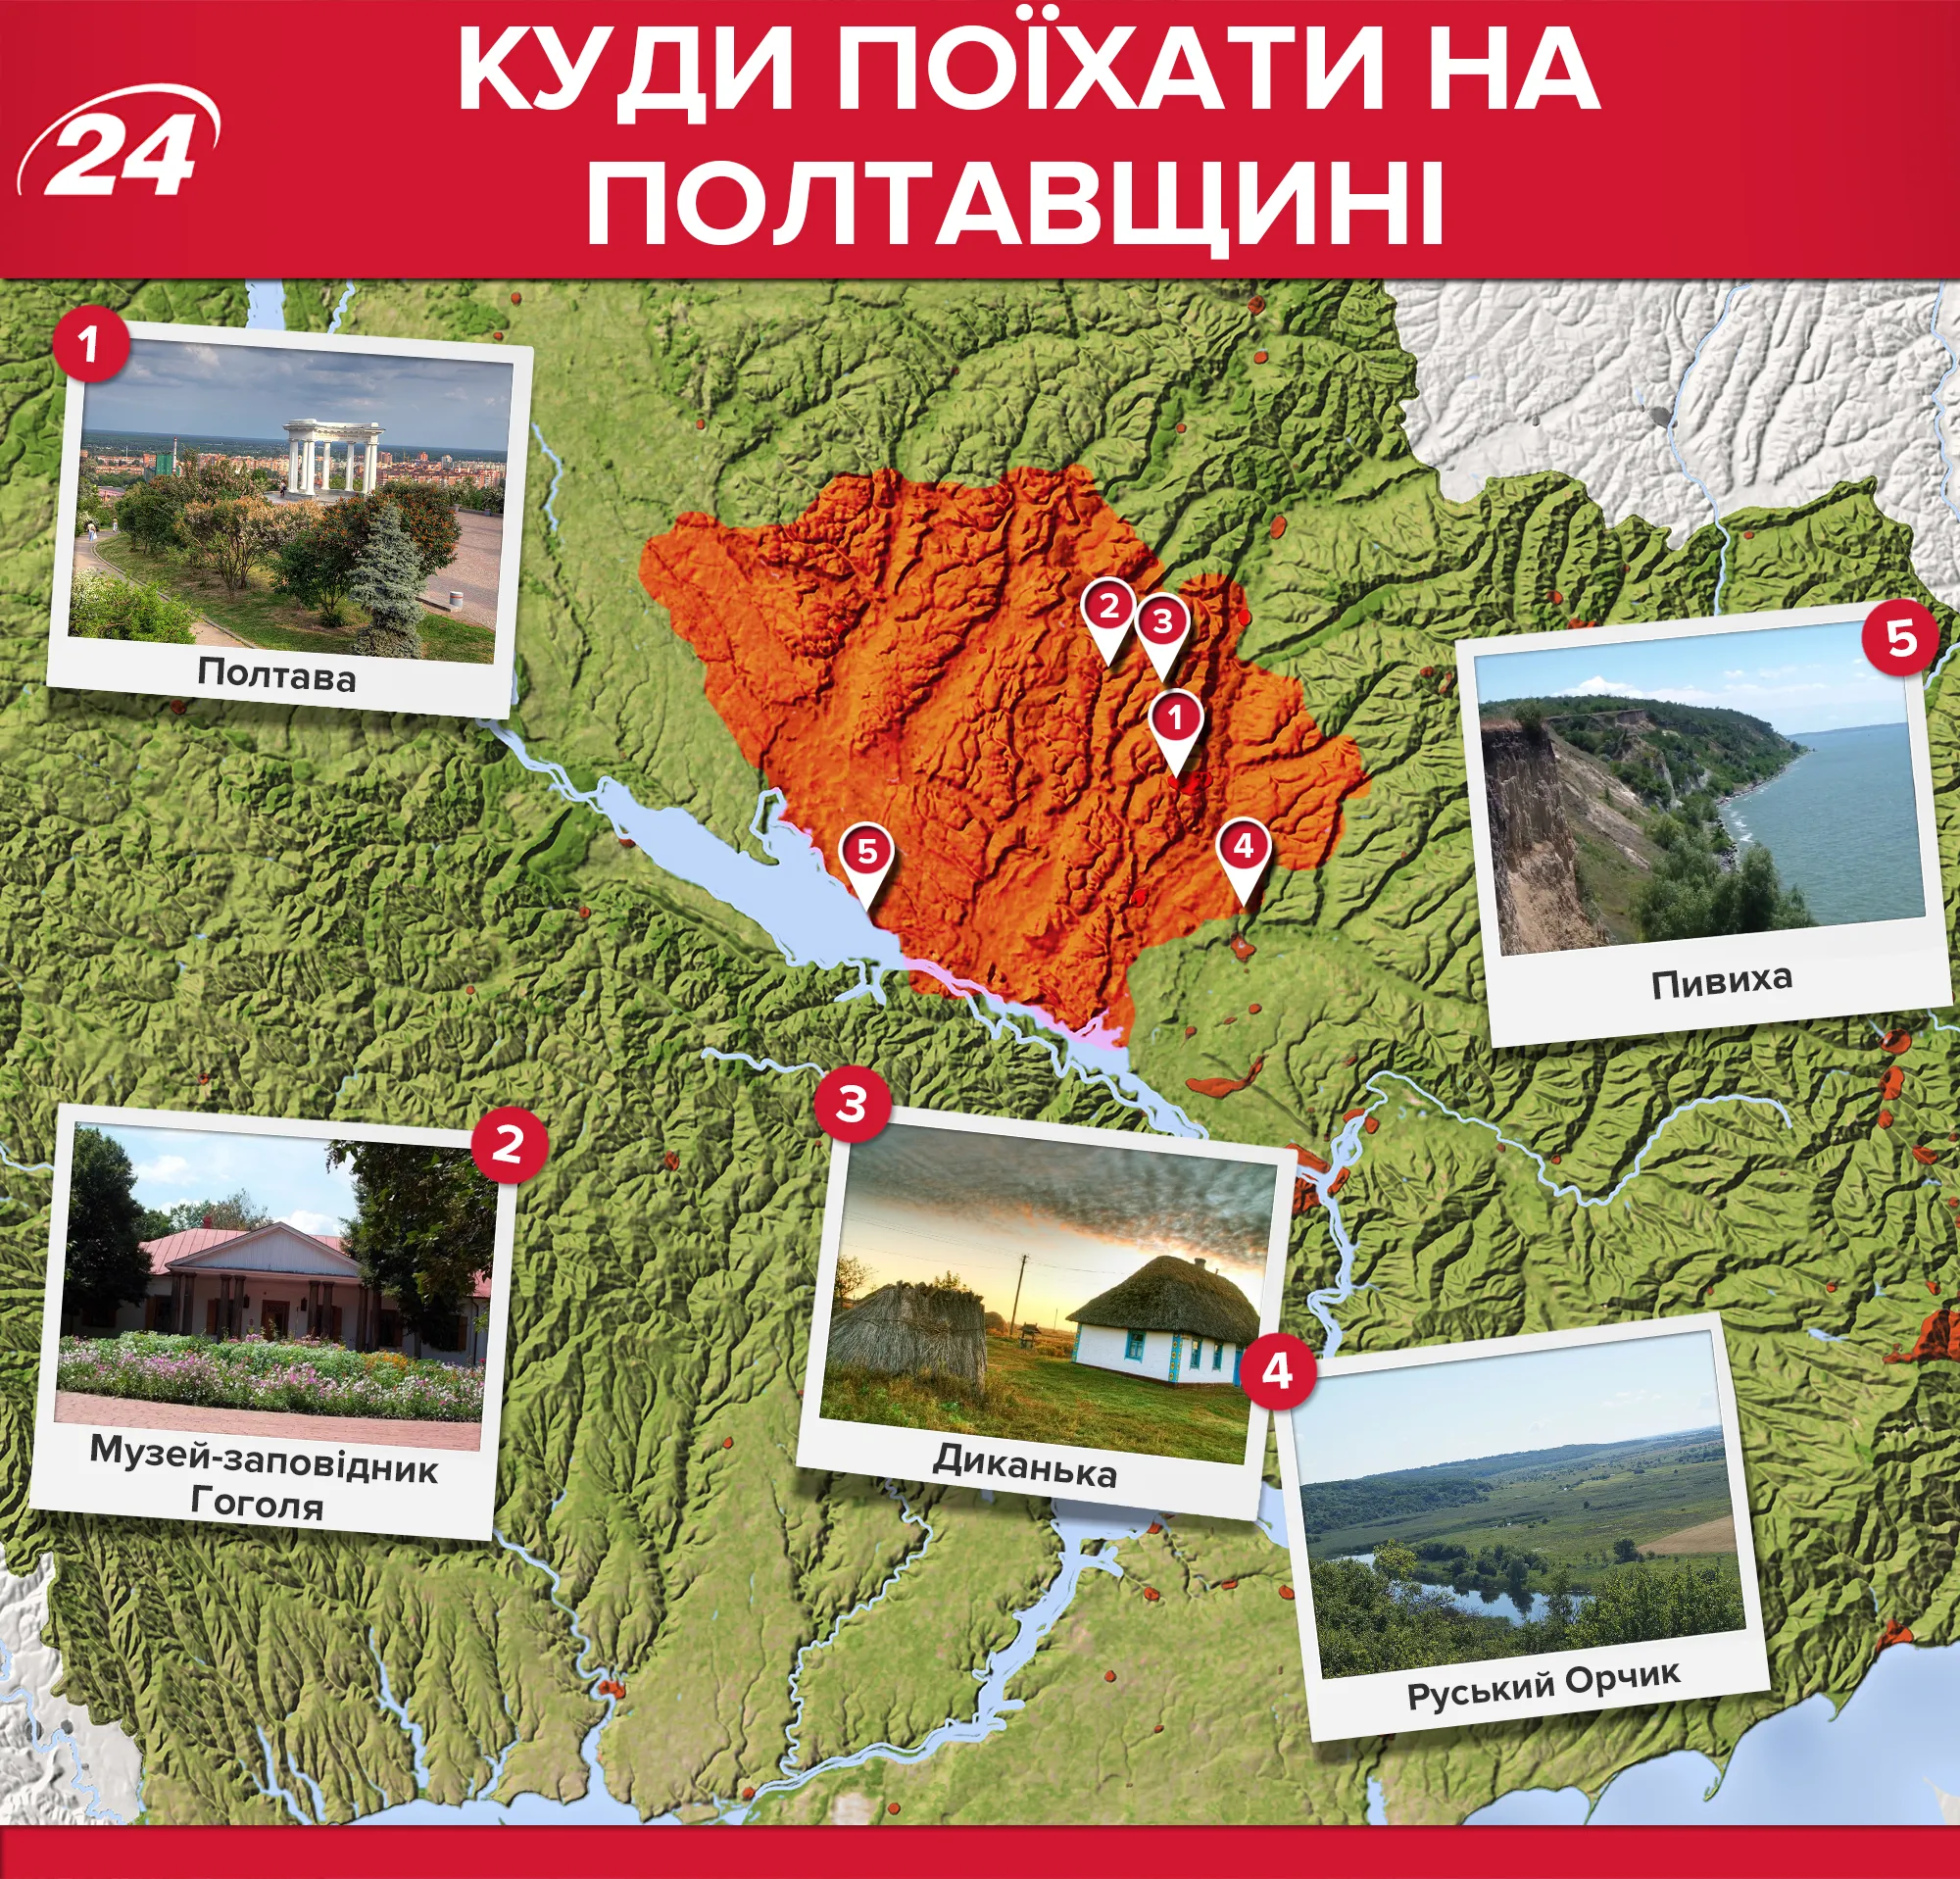 Полтавська область: які місця варто відвідати